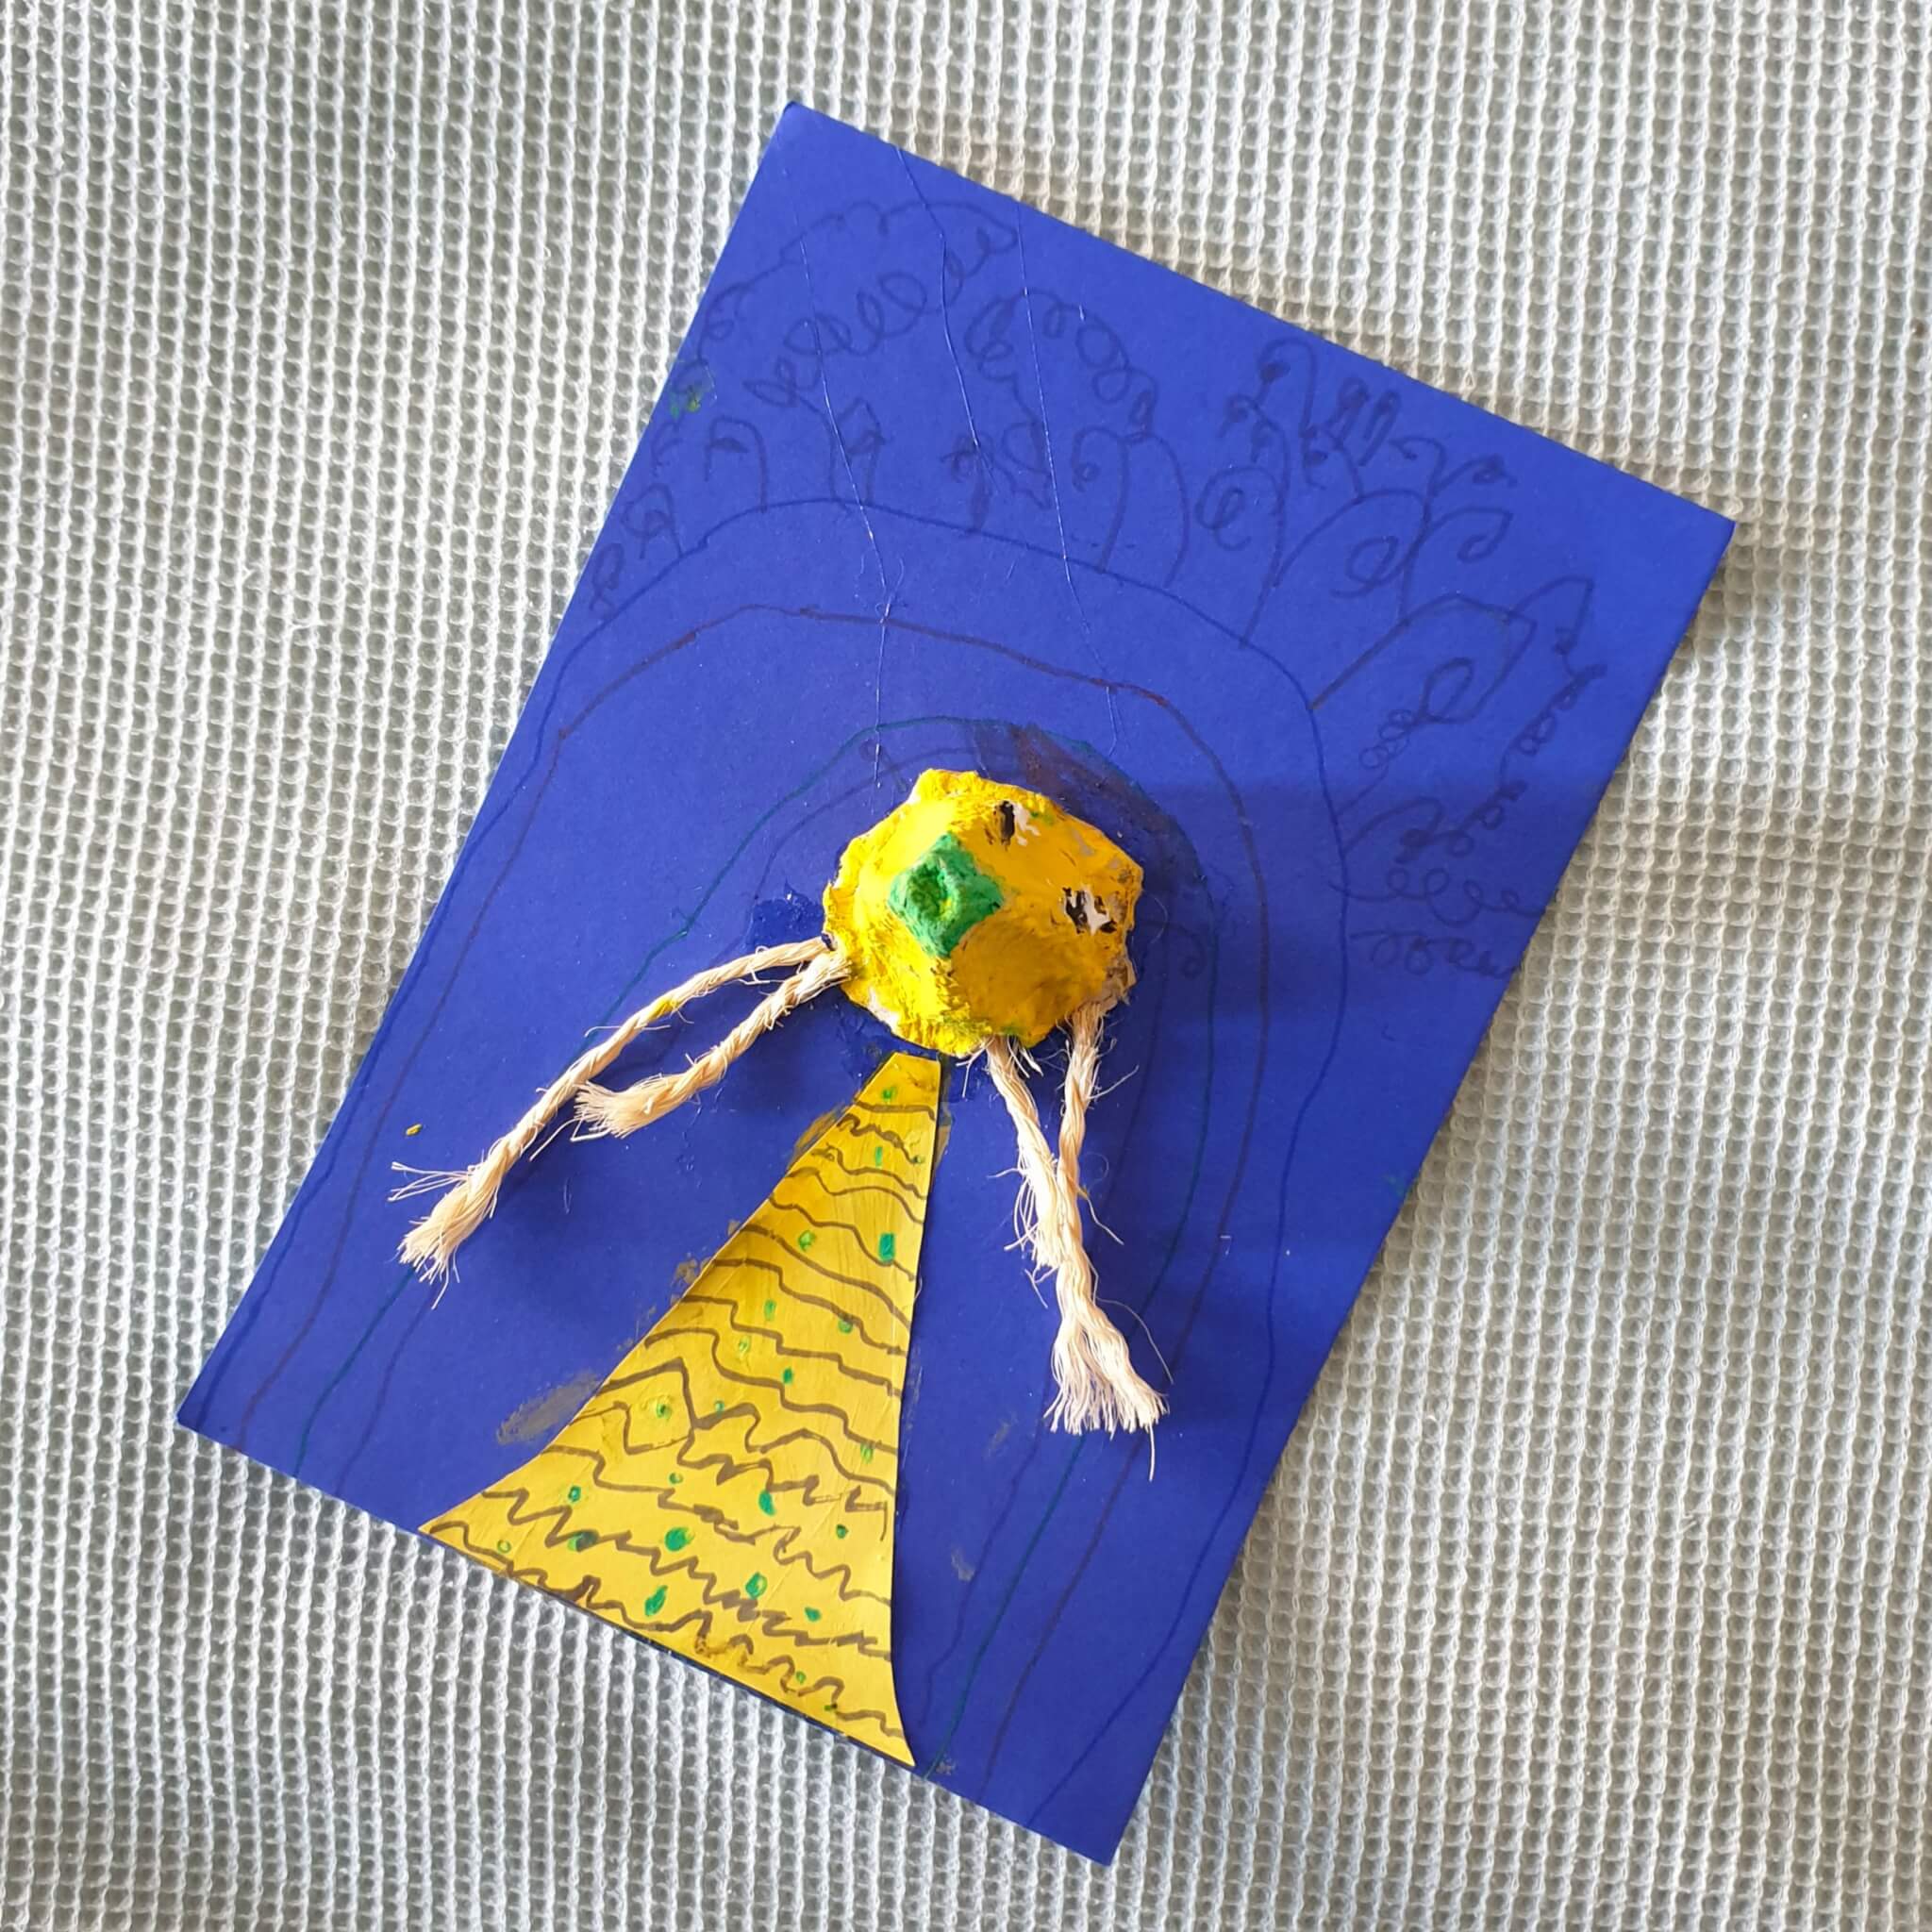 101 ideeën om te knutselen met kinderen. Dit poppetje knutselde kleine meis op school. Ze gebruikte dik blauw papier als basis en knipte een jurkje van geel papier. Uit een eierdoos knipte ze één vakje en verfde het geel. Daarnaast schilderde ze er een neus en oogjes op. De haren zijn gemaakt van stukje touw. 